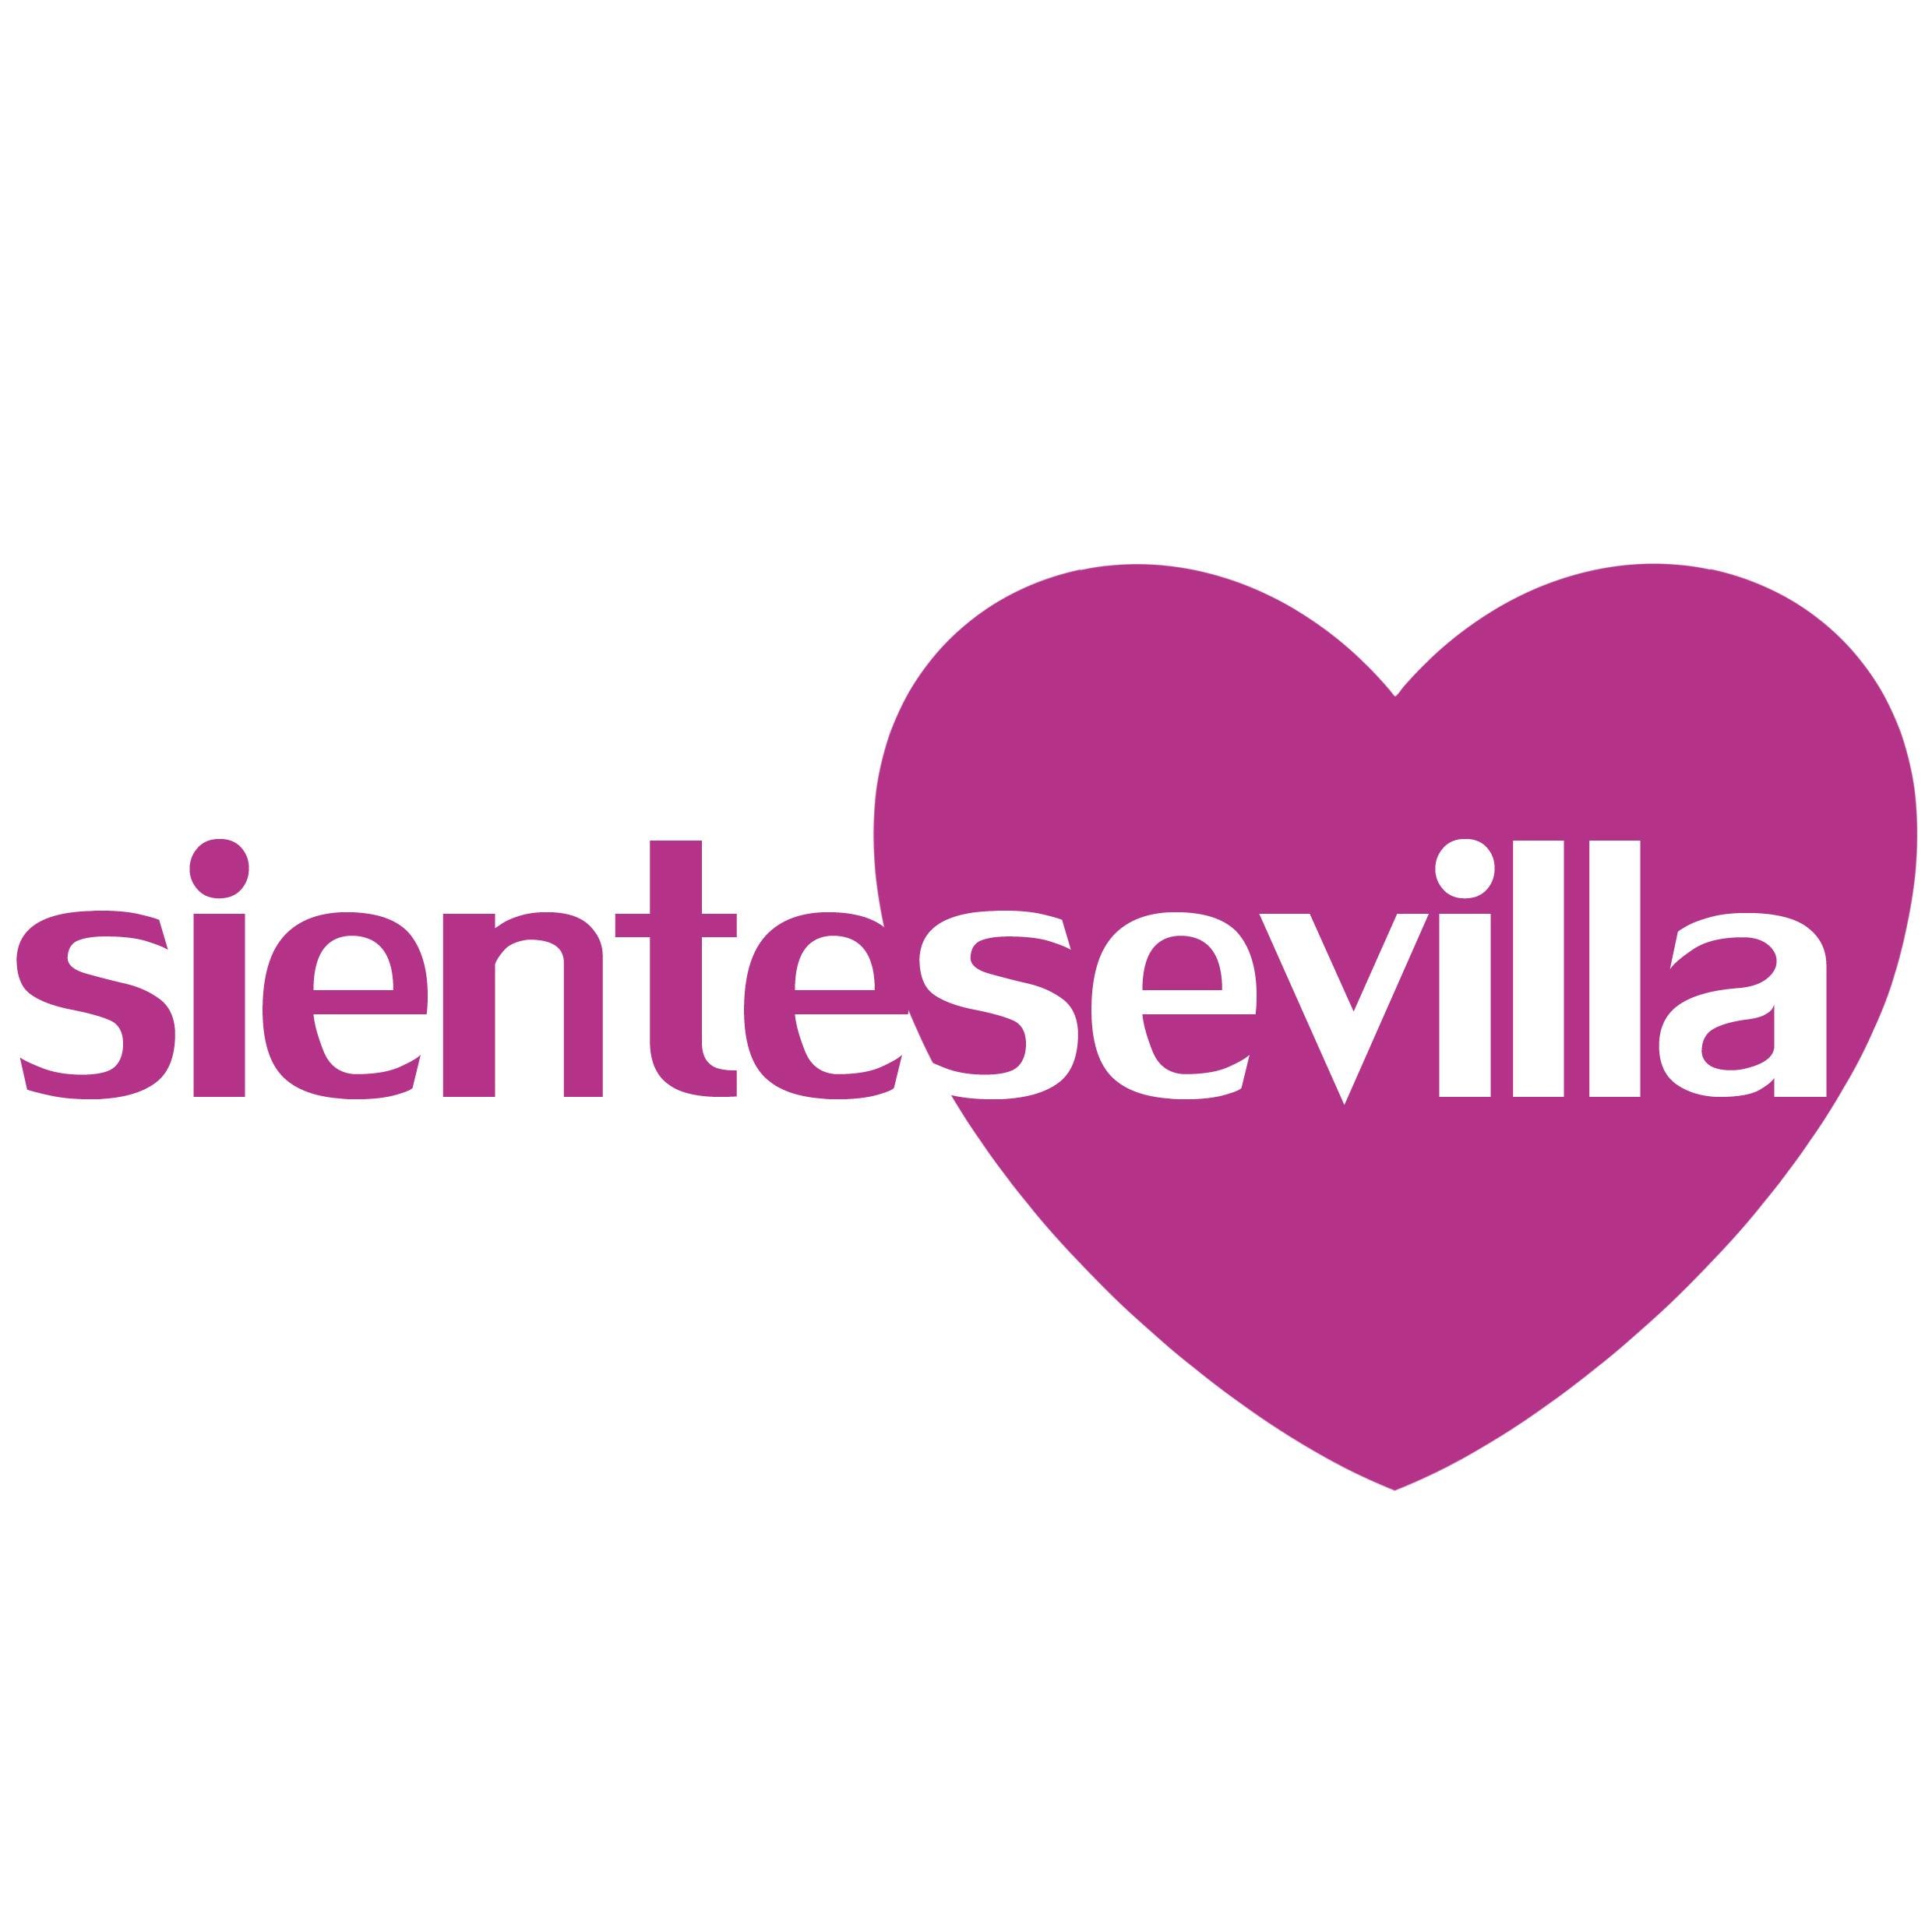 Siente Sevilla te ofrece un programa de actividades para sentir la ciudad y explorar todas sus posibilidades de una forma única.